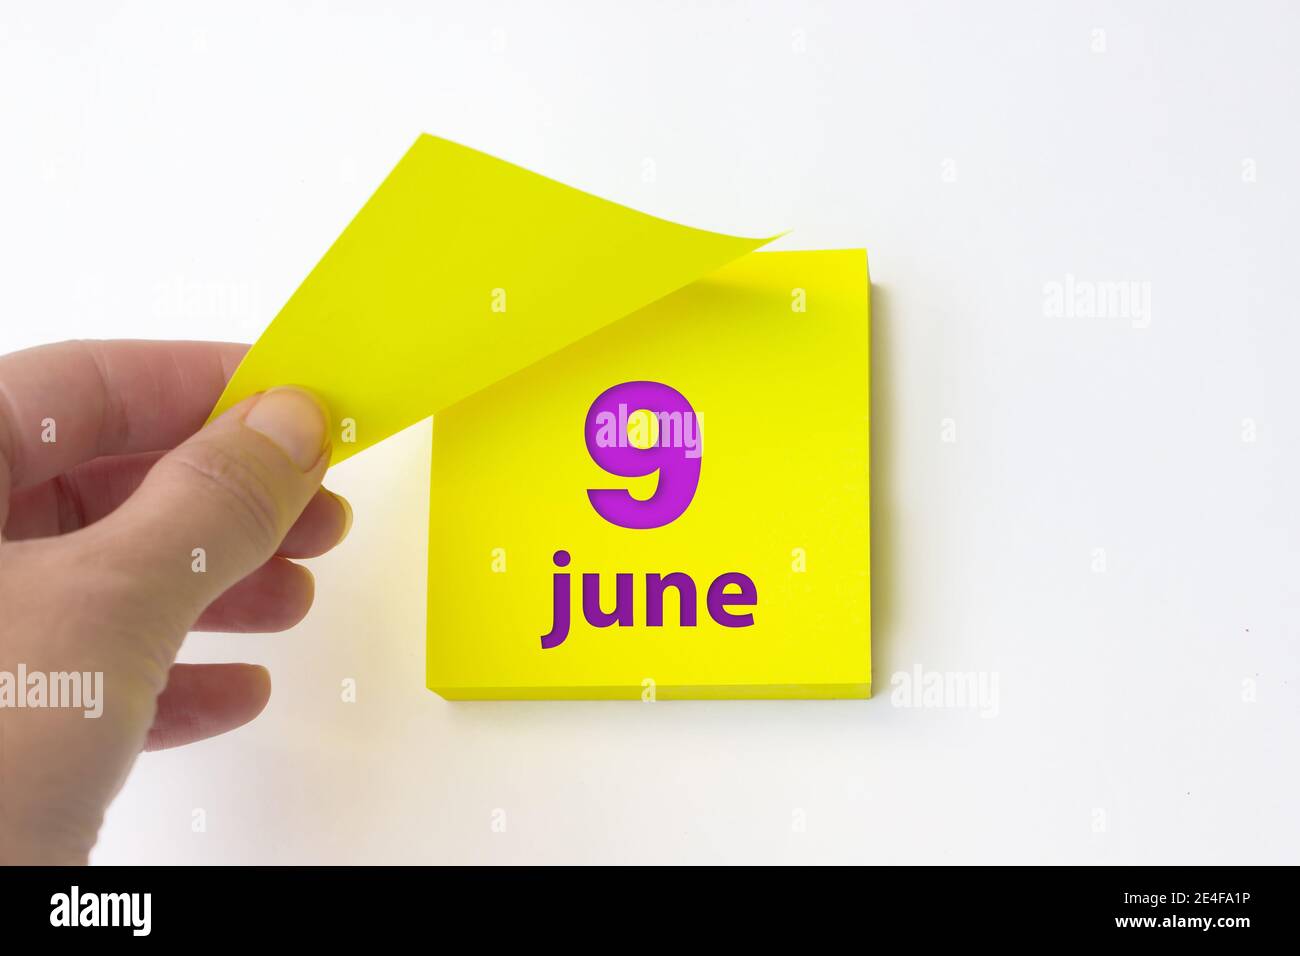 9 juin. Jour 9 du mois, date du calendrier. La main se défait de la feuille jaune du calendrier. Concept mois d'été, jour de l'année Banque D'Images